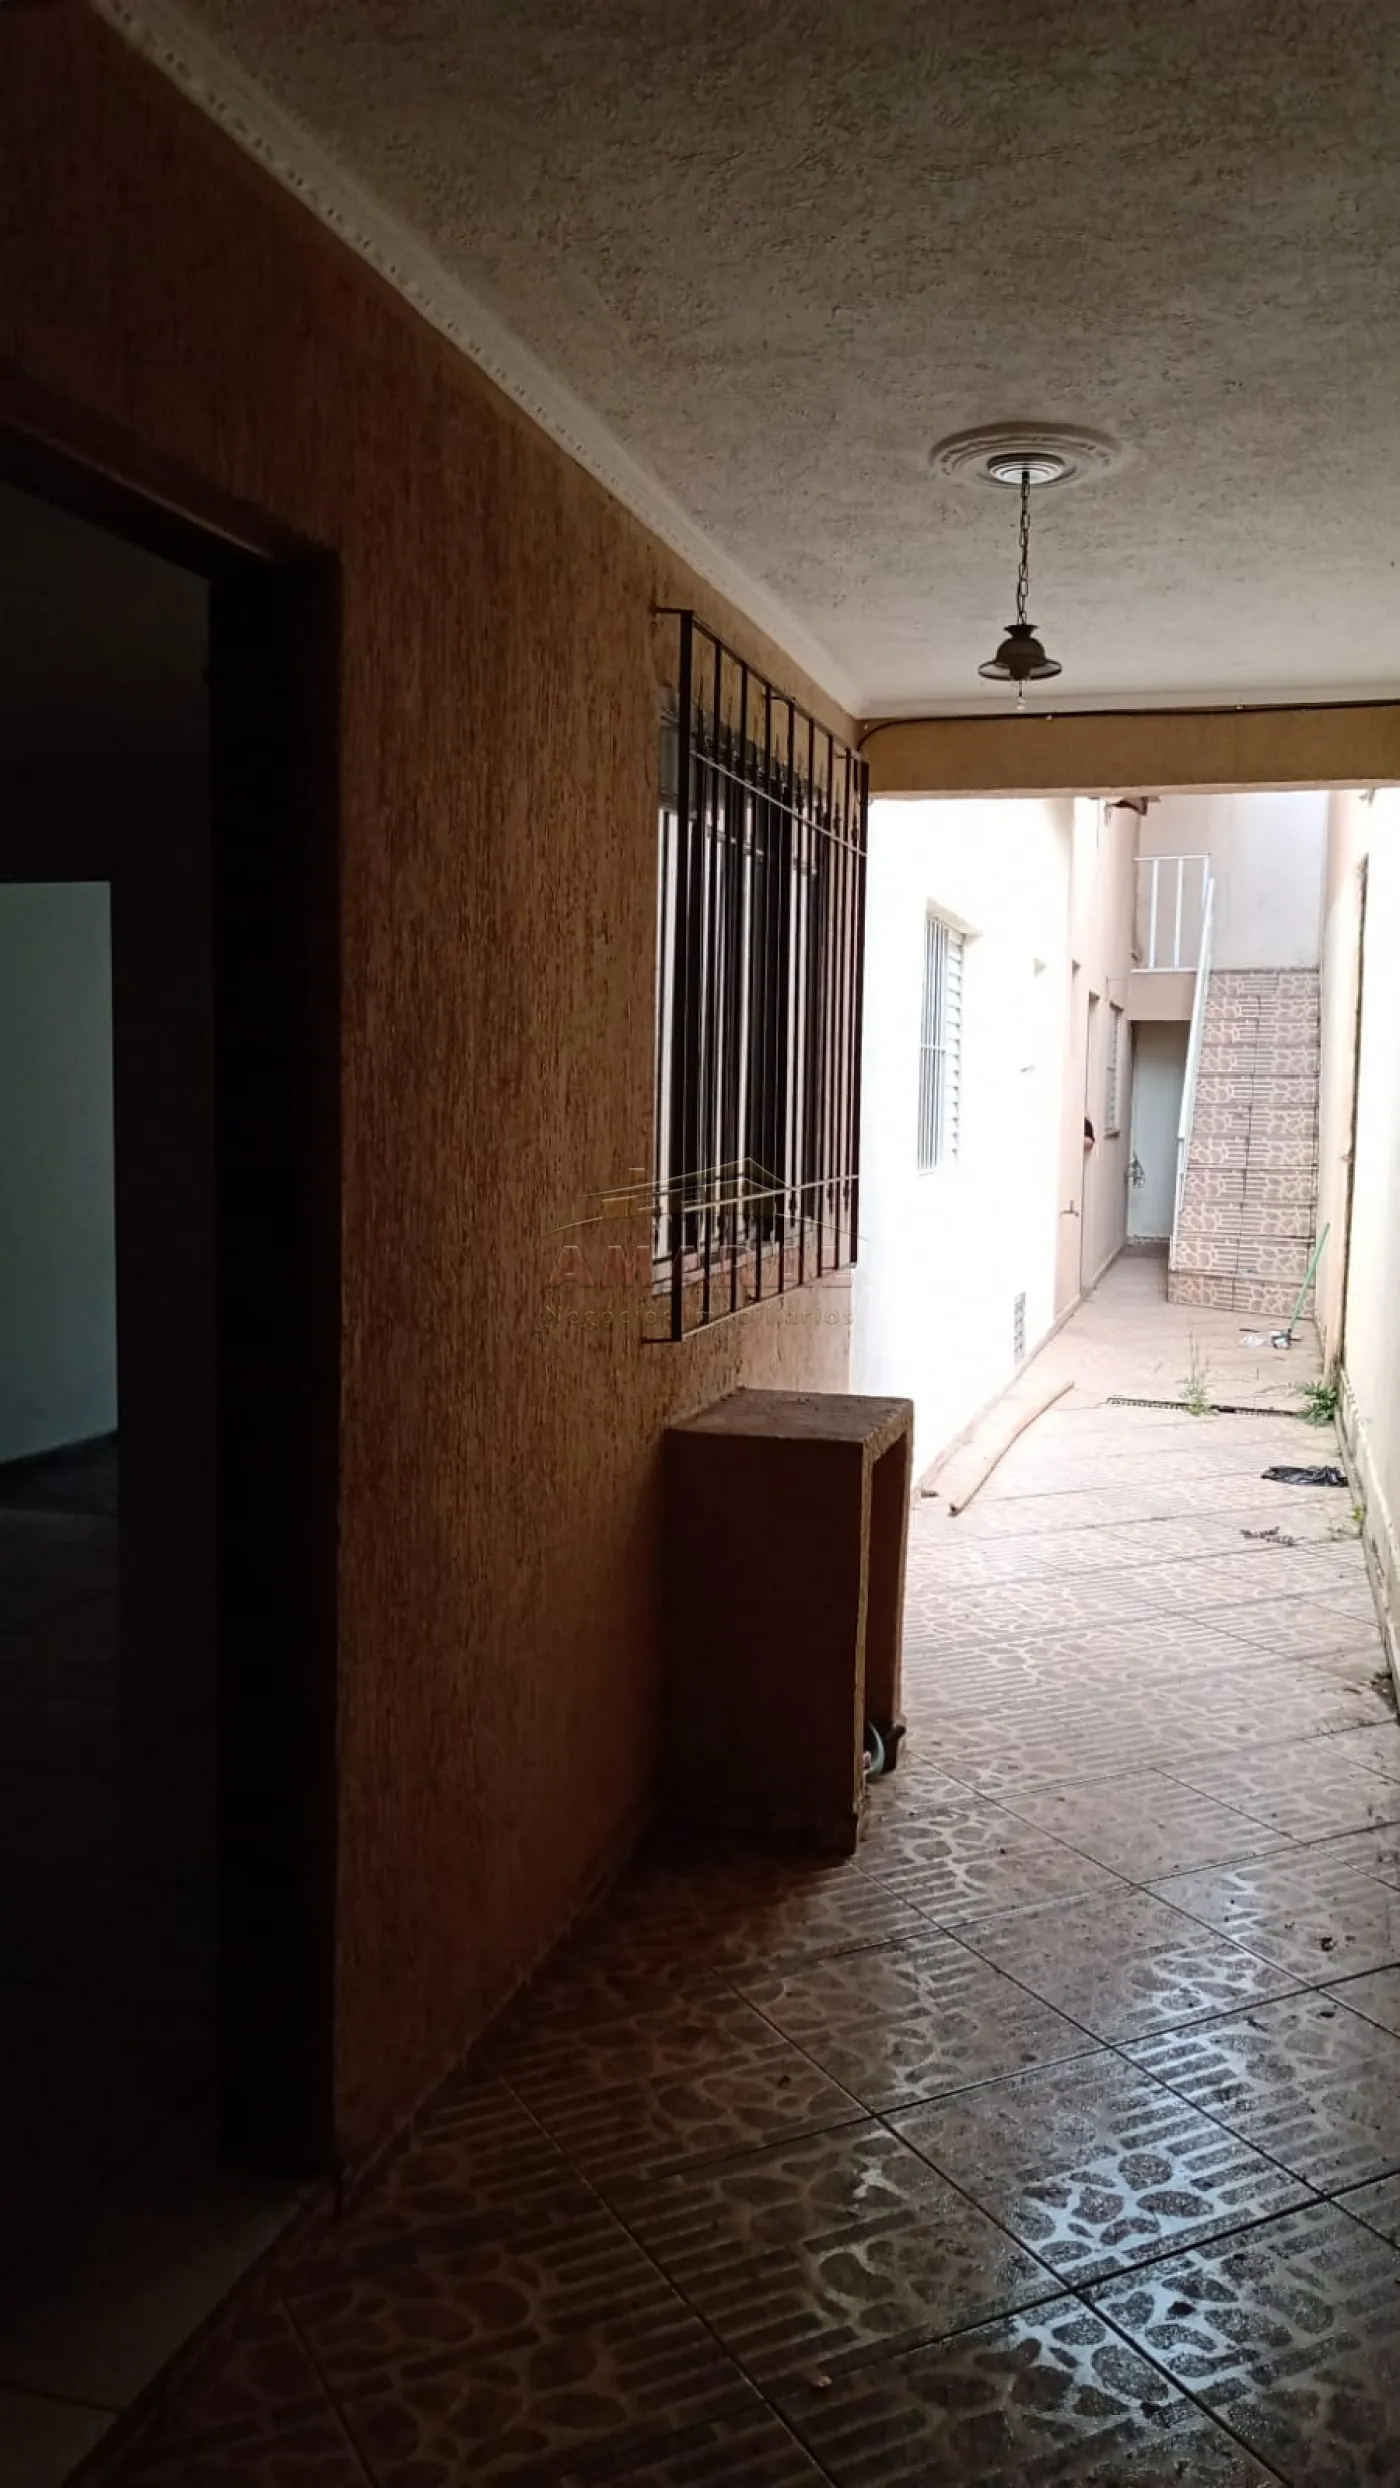 Comprar Casas / Térrea em Poá R$ 320.000,00 - Foto 6